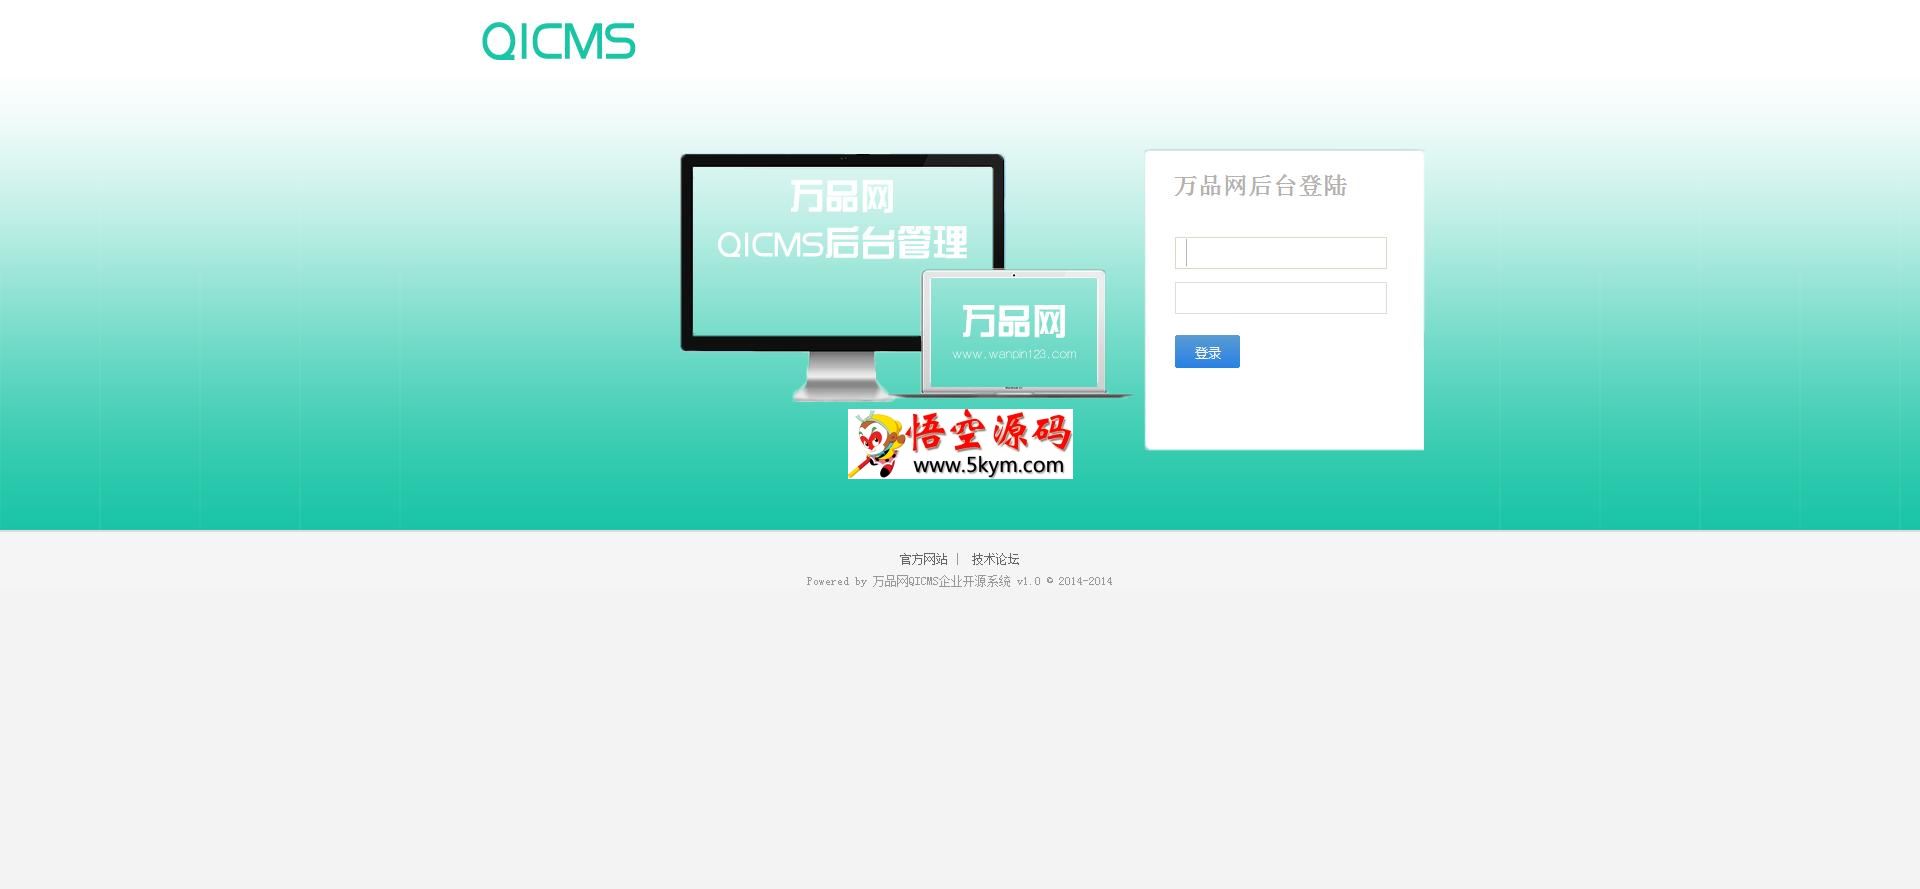 万品网QICMS企业开源程序